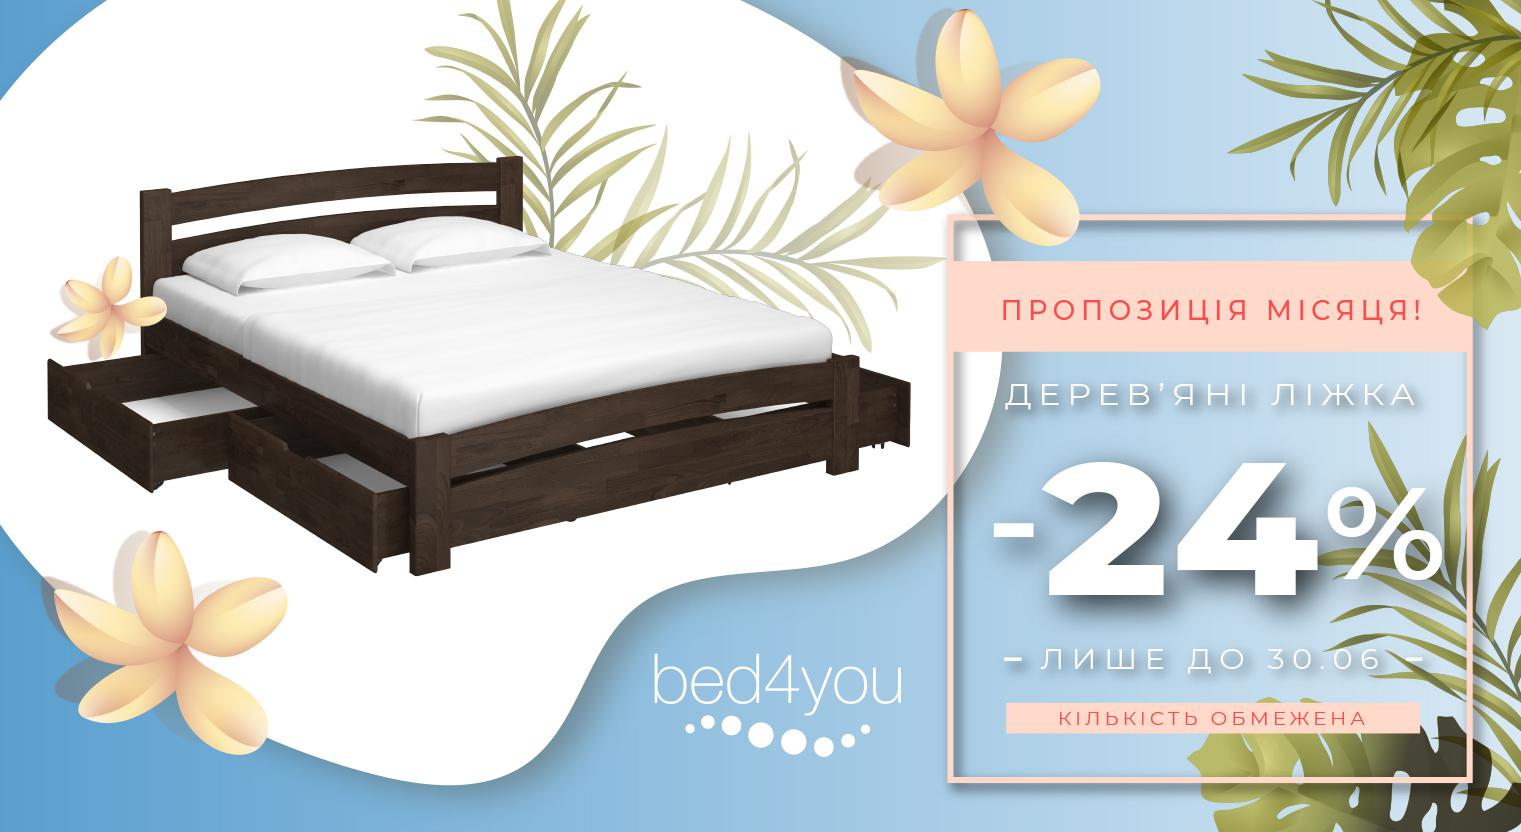 Оголошуємо небувалу знижку 24% на наші найпопулярніші моделі дерев'яних ліжок!